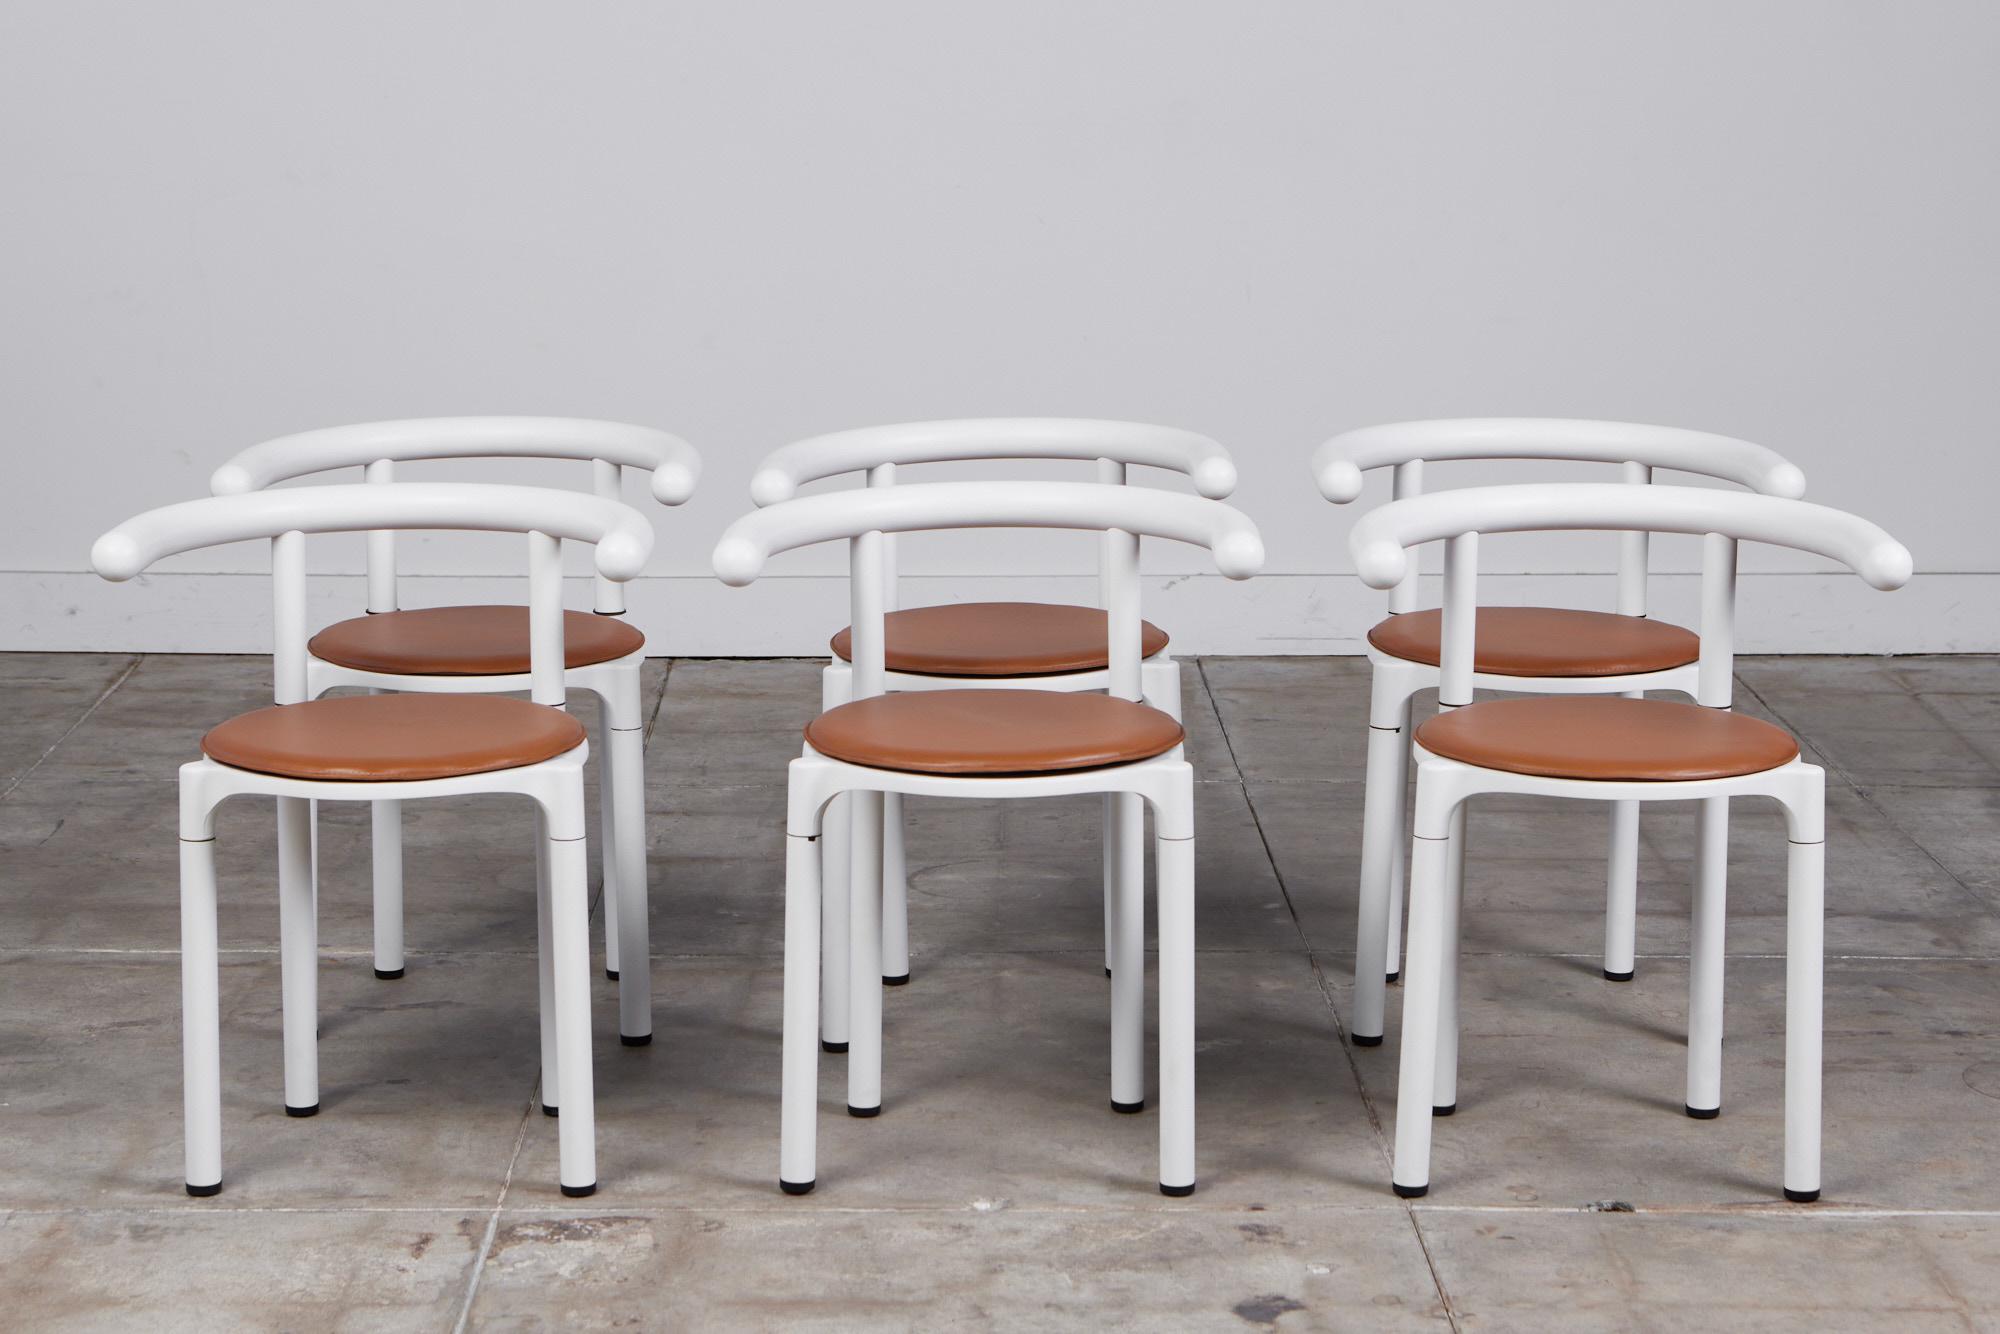 Un ensemble de six chaises de salle à manger de style moderne tardif de la maison de design italienne Kartell. Le modèle 4855 est une édition plus rare des sièges, conçue en 1981 par la cofondatrice et directrice artistique de la société, Anna